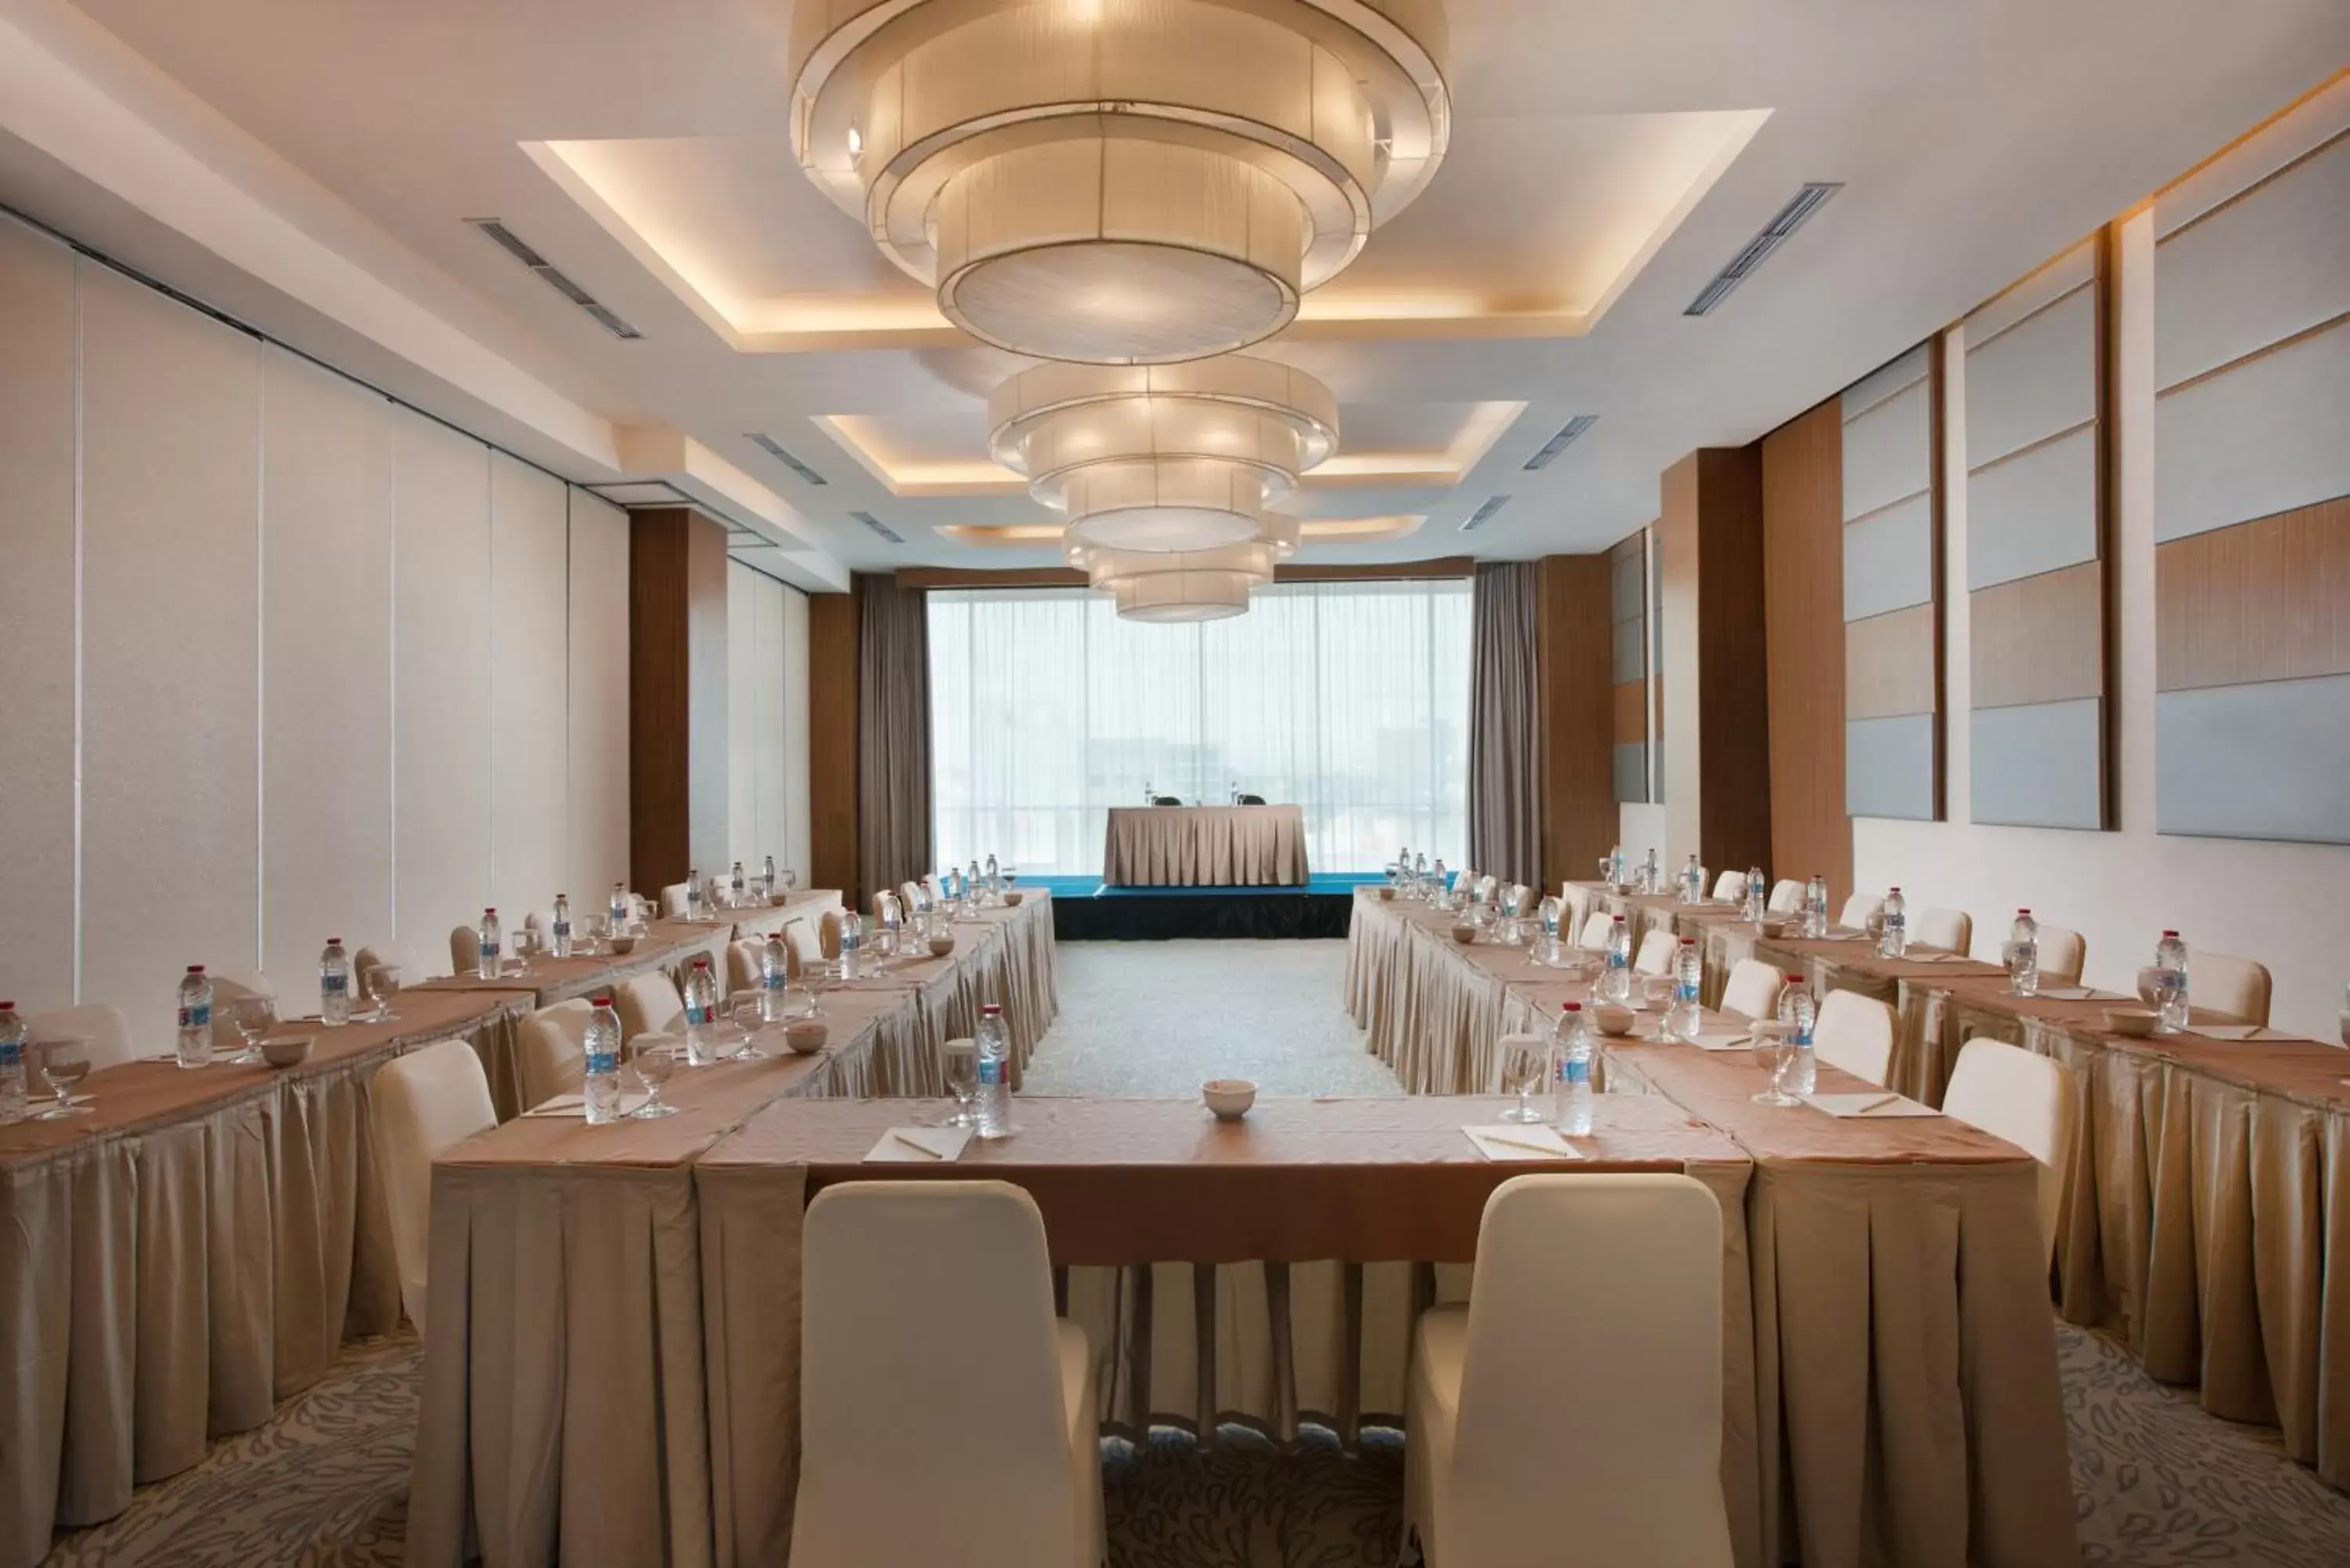 Meeting/conference room, Banquet Facilities in Hotel Santika Radial Palembang